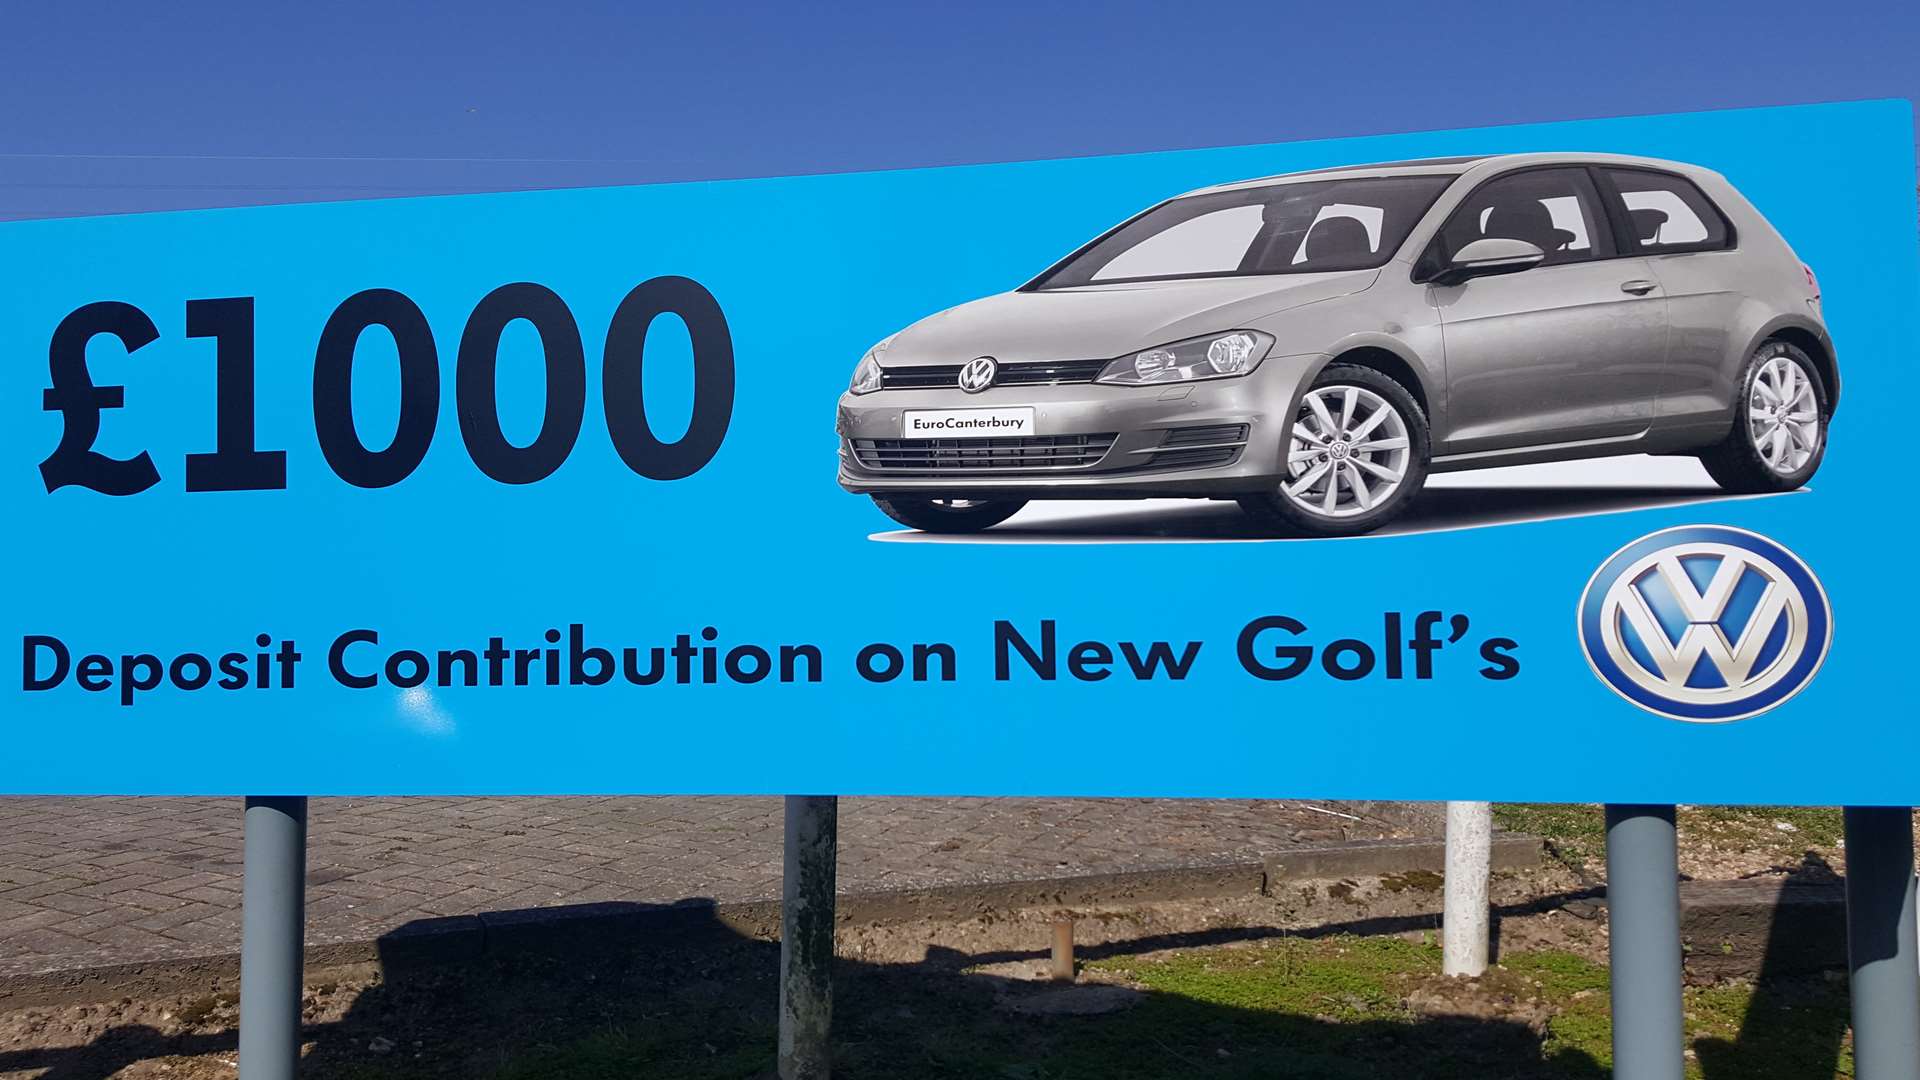 The erroneous “Golf’s” advert in Broad Oak